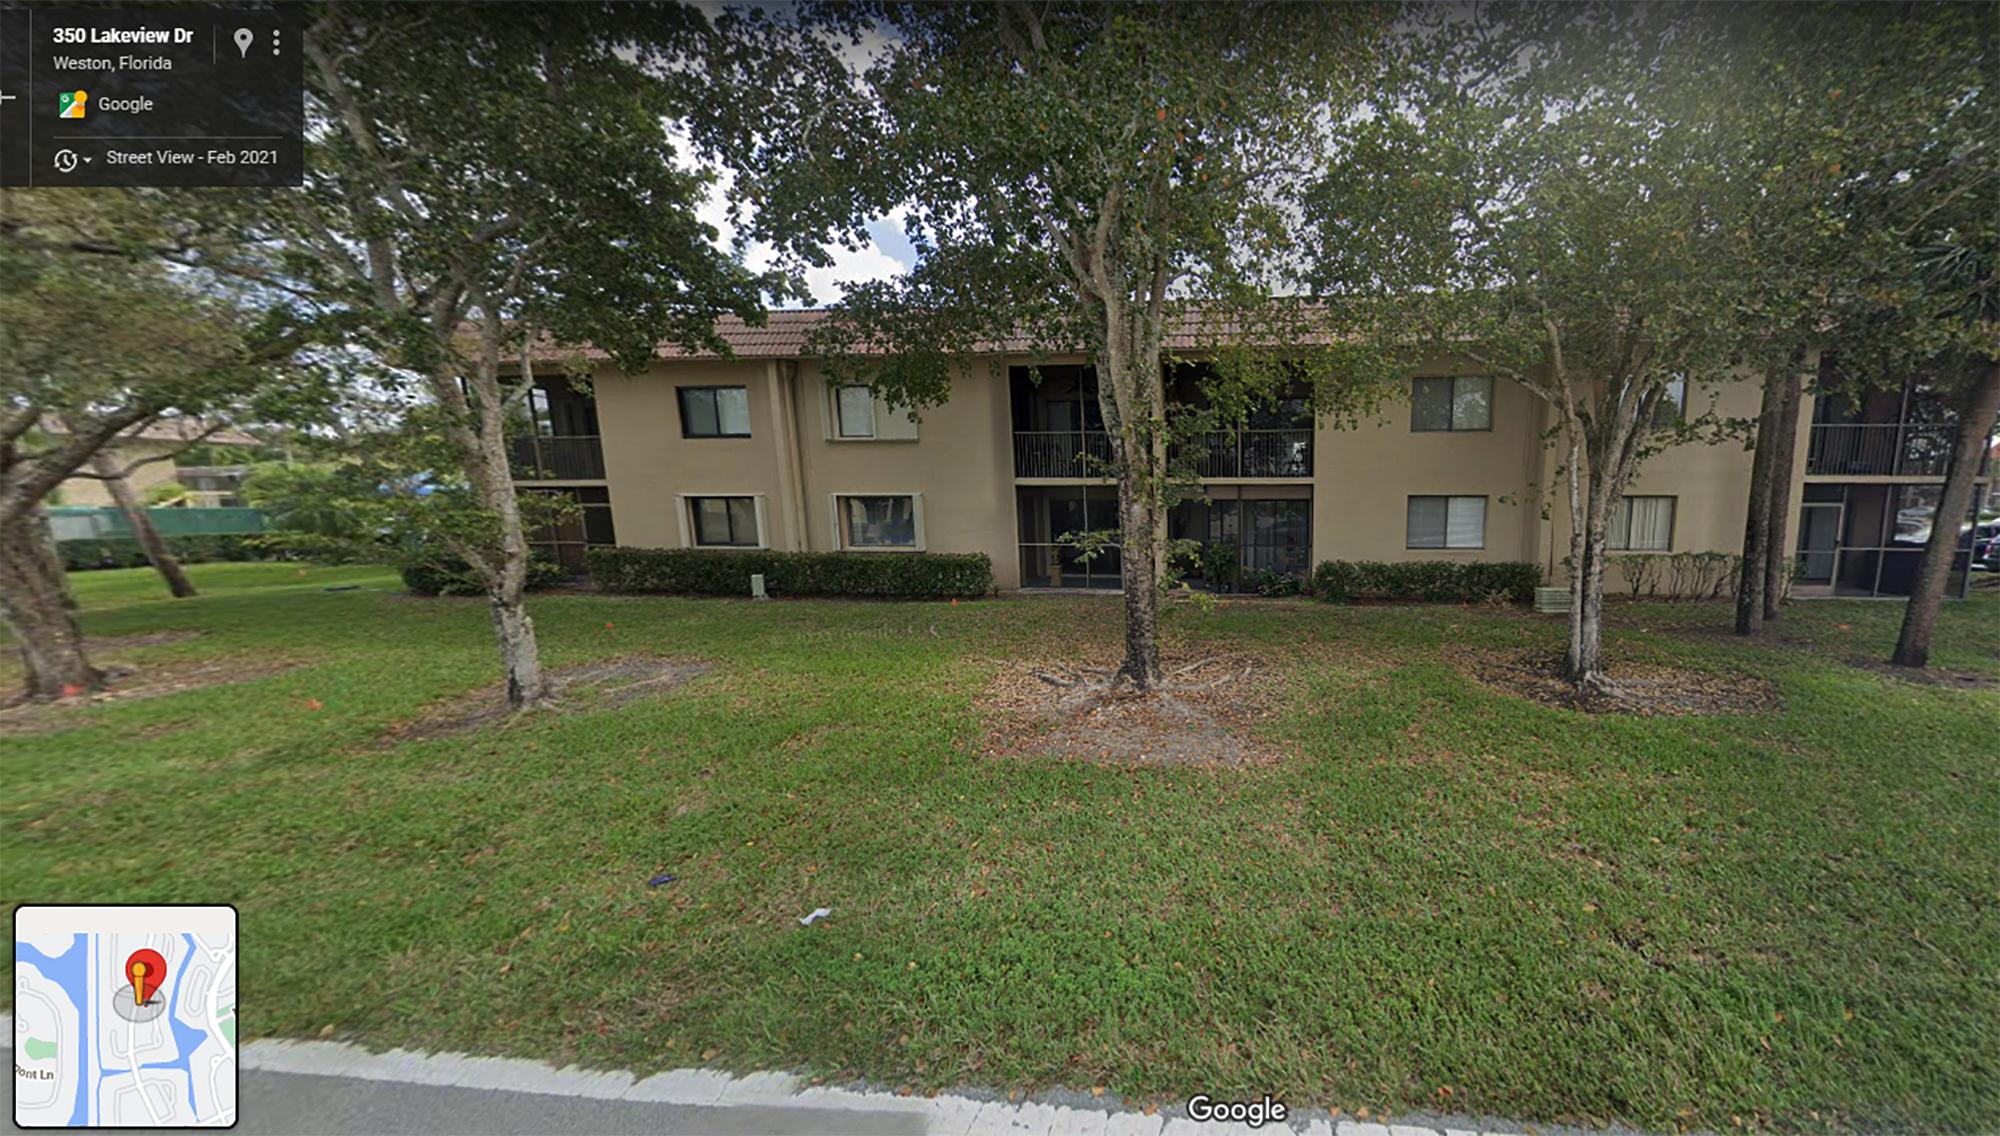 La empresa Ulter, a la que el gobierno de El Salvador le asignó funciones de centro de soporte, está ubicada en 350 Lakeview Dr. Bldg 55, Apartamento 1003, en Weston Florida. 